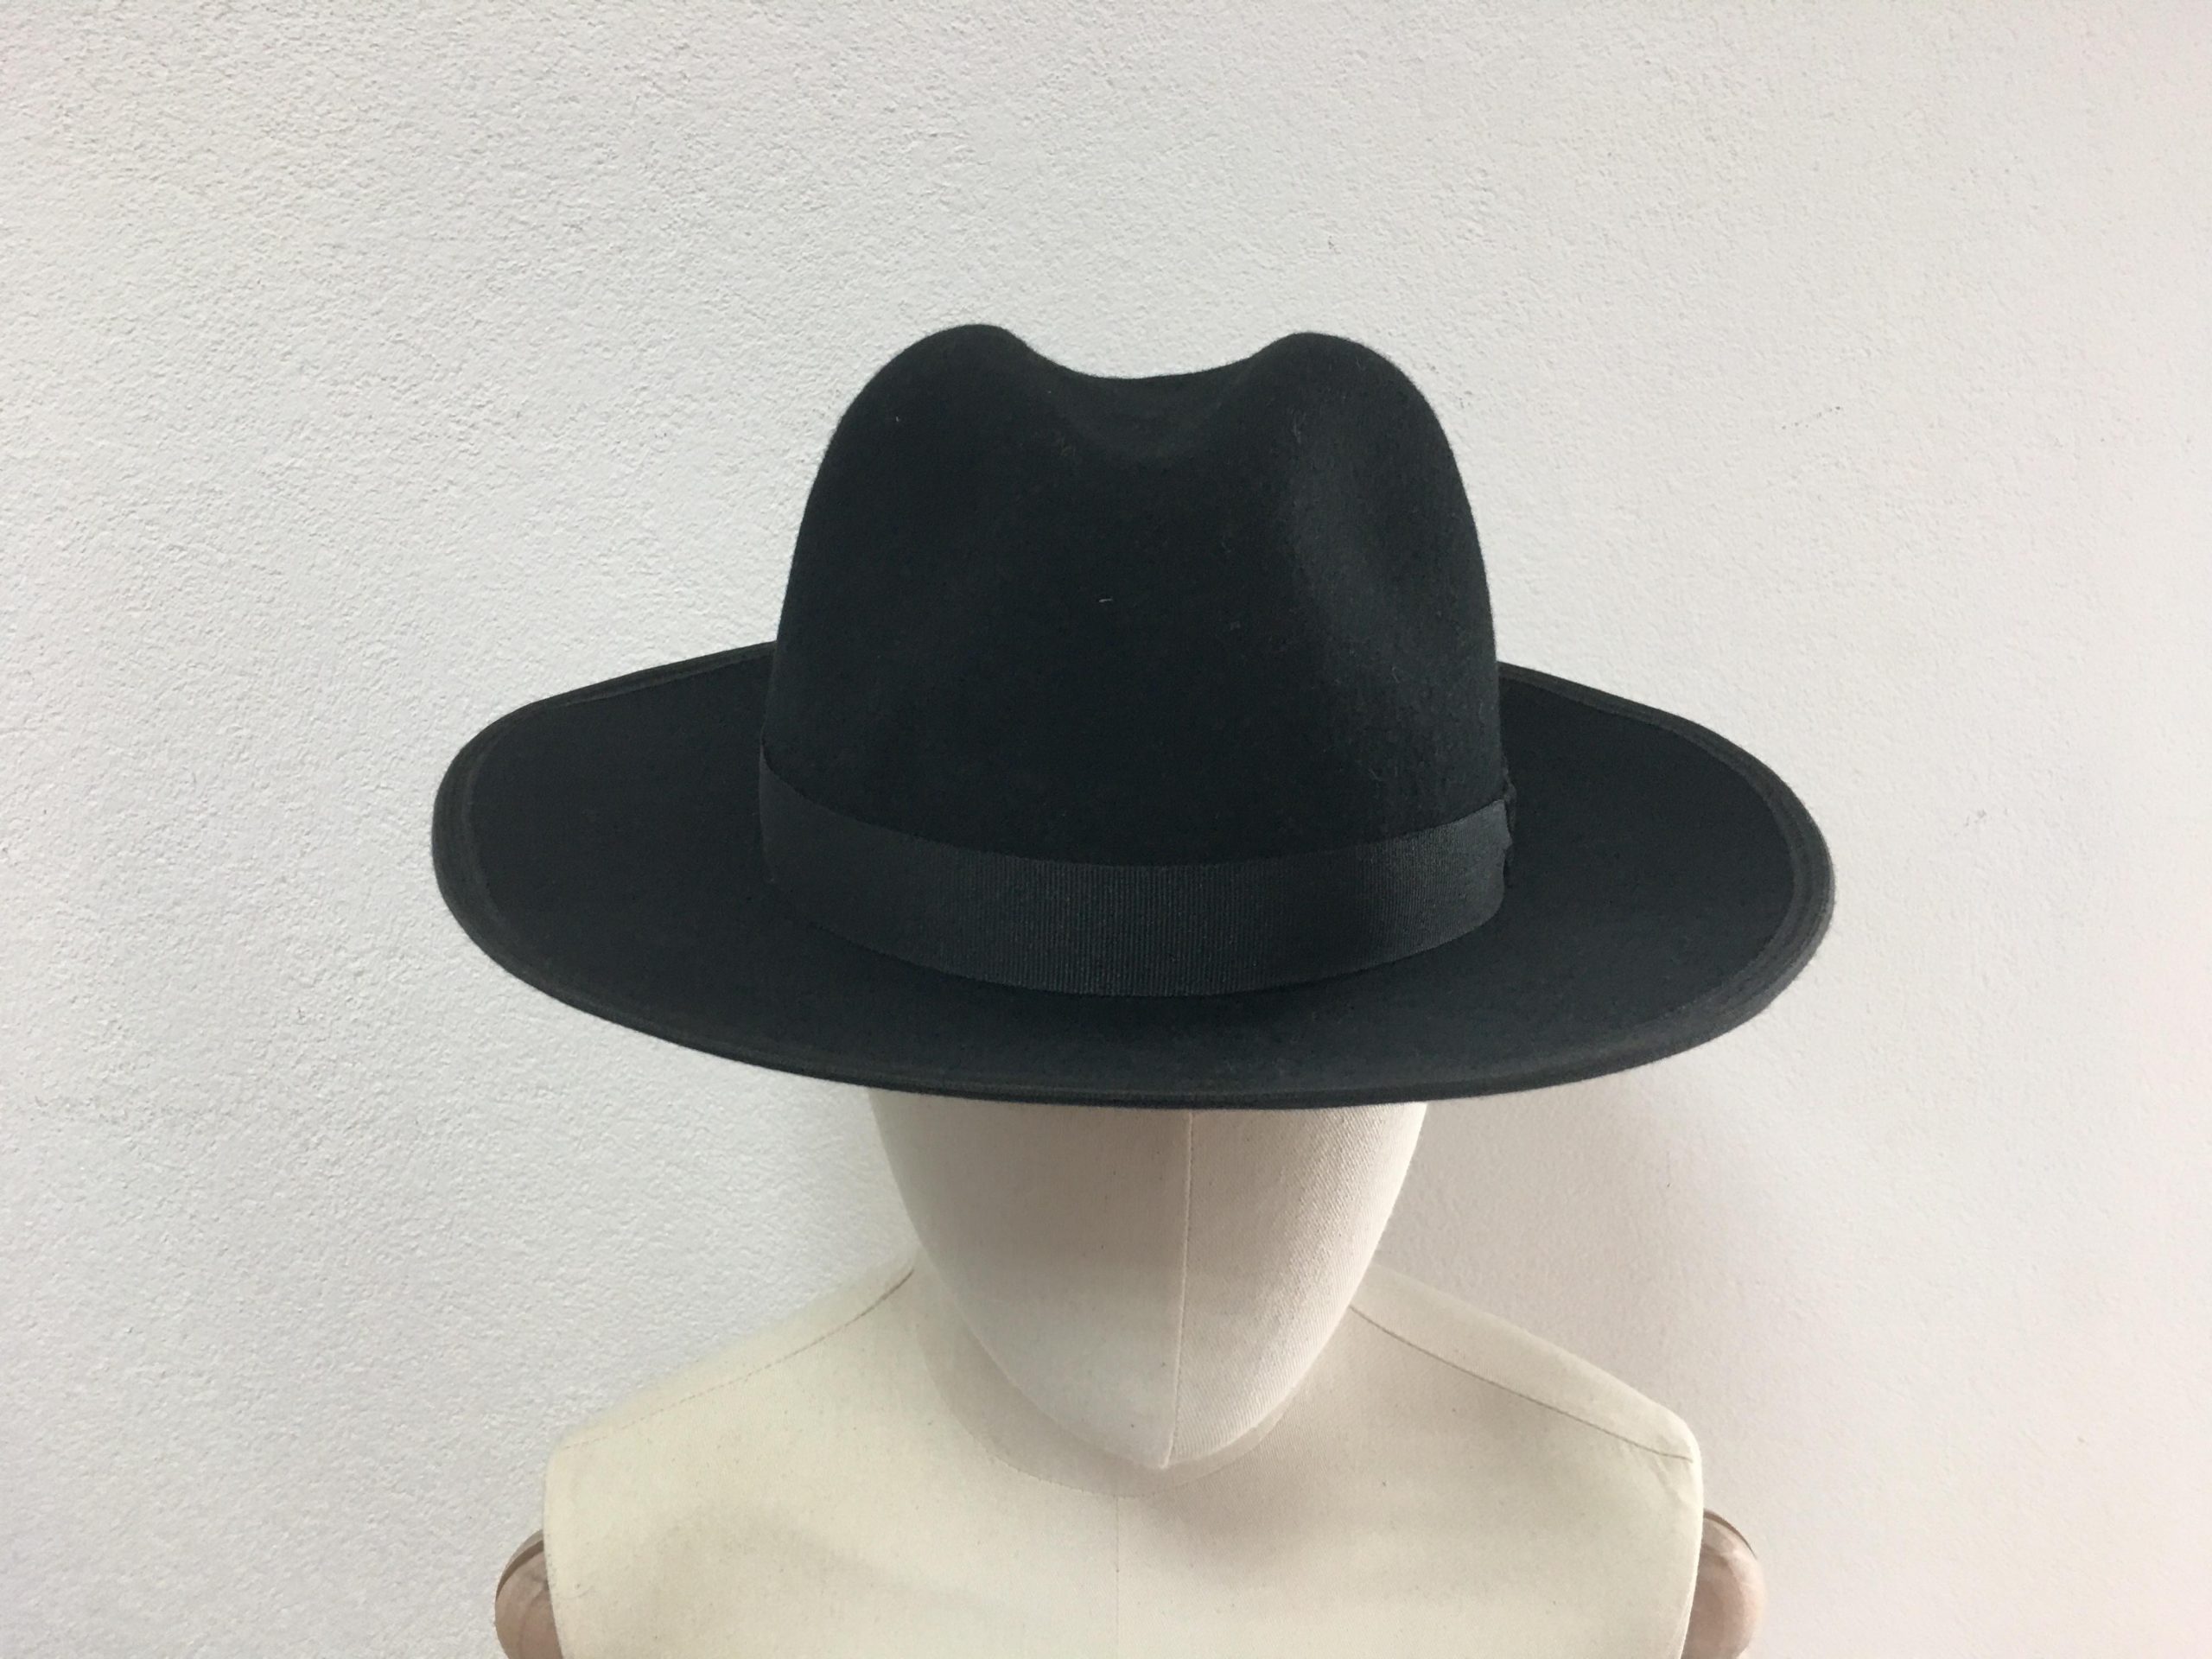 Gazdovský klobúk